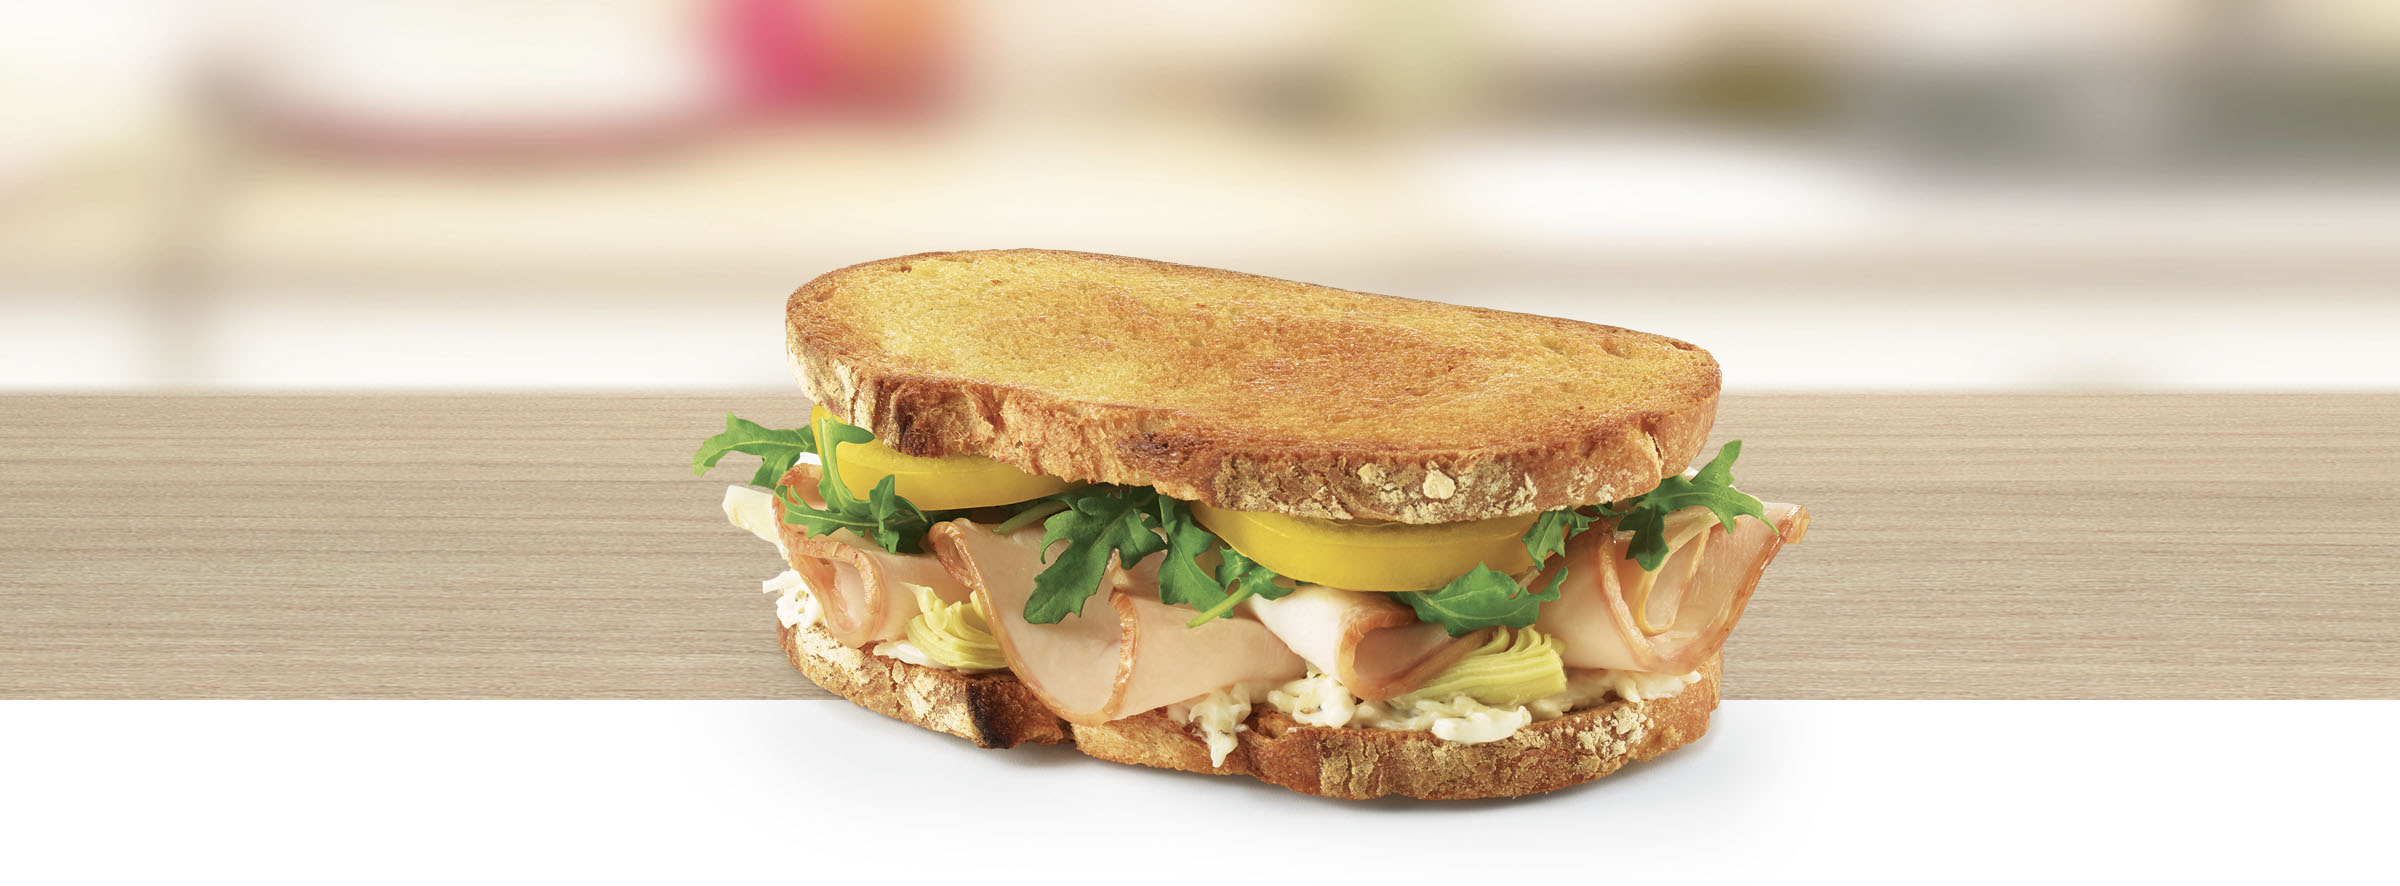 Artichoke-Asiago Turkey Sandwich